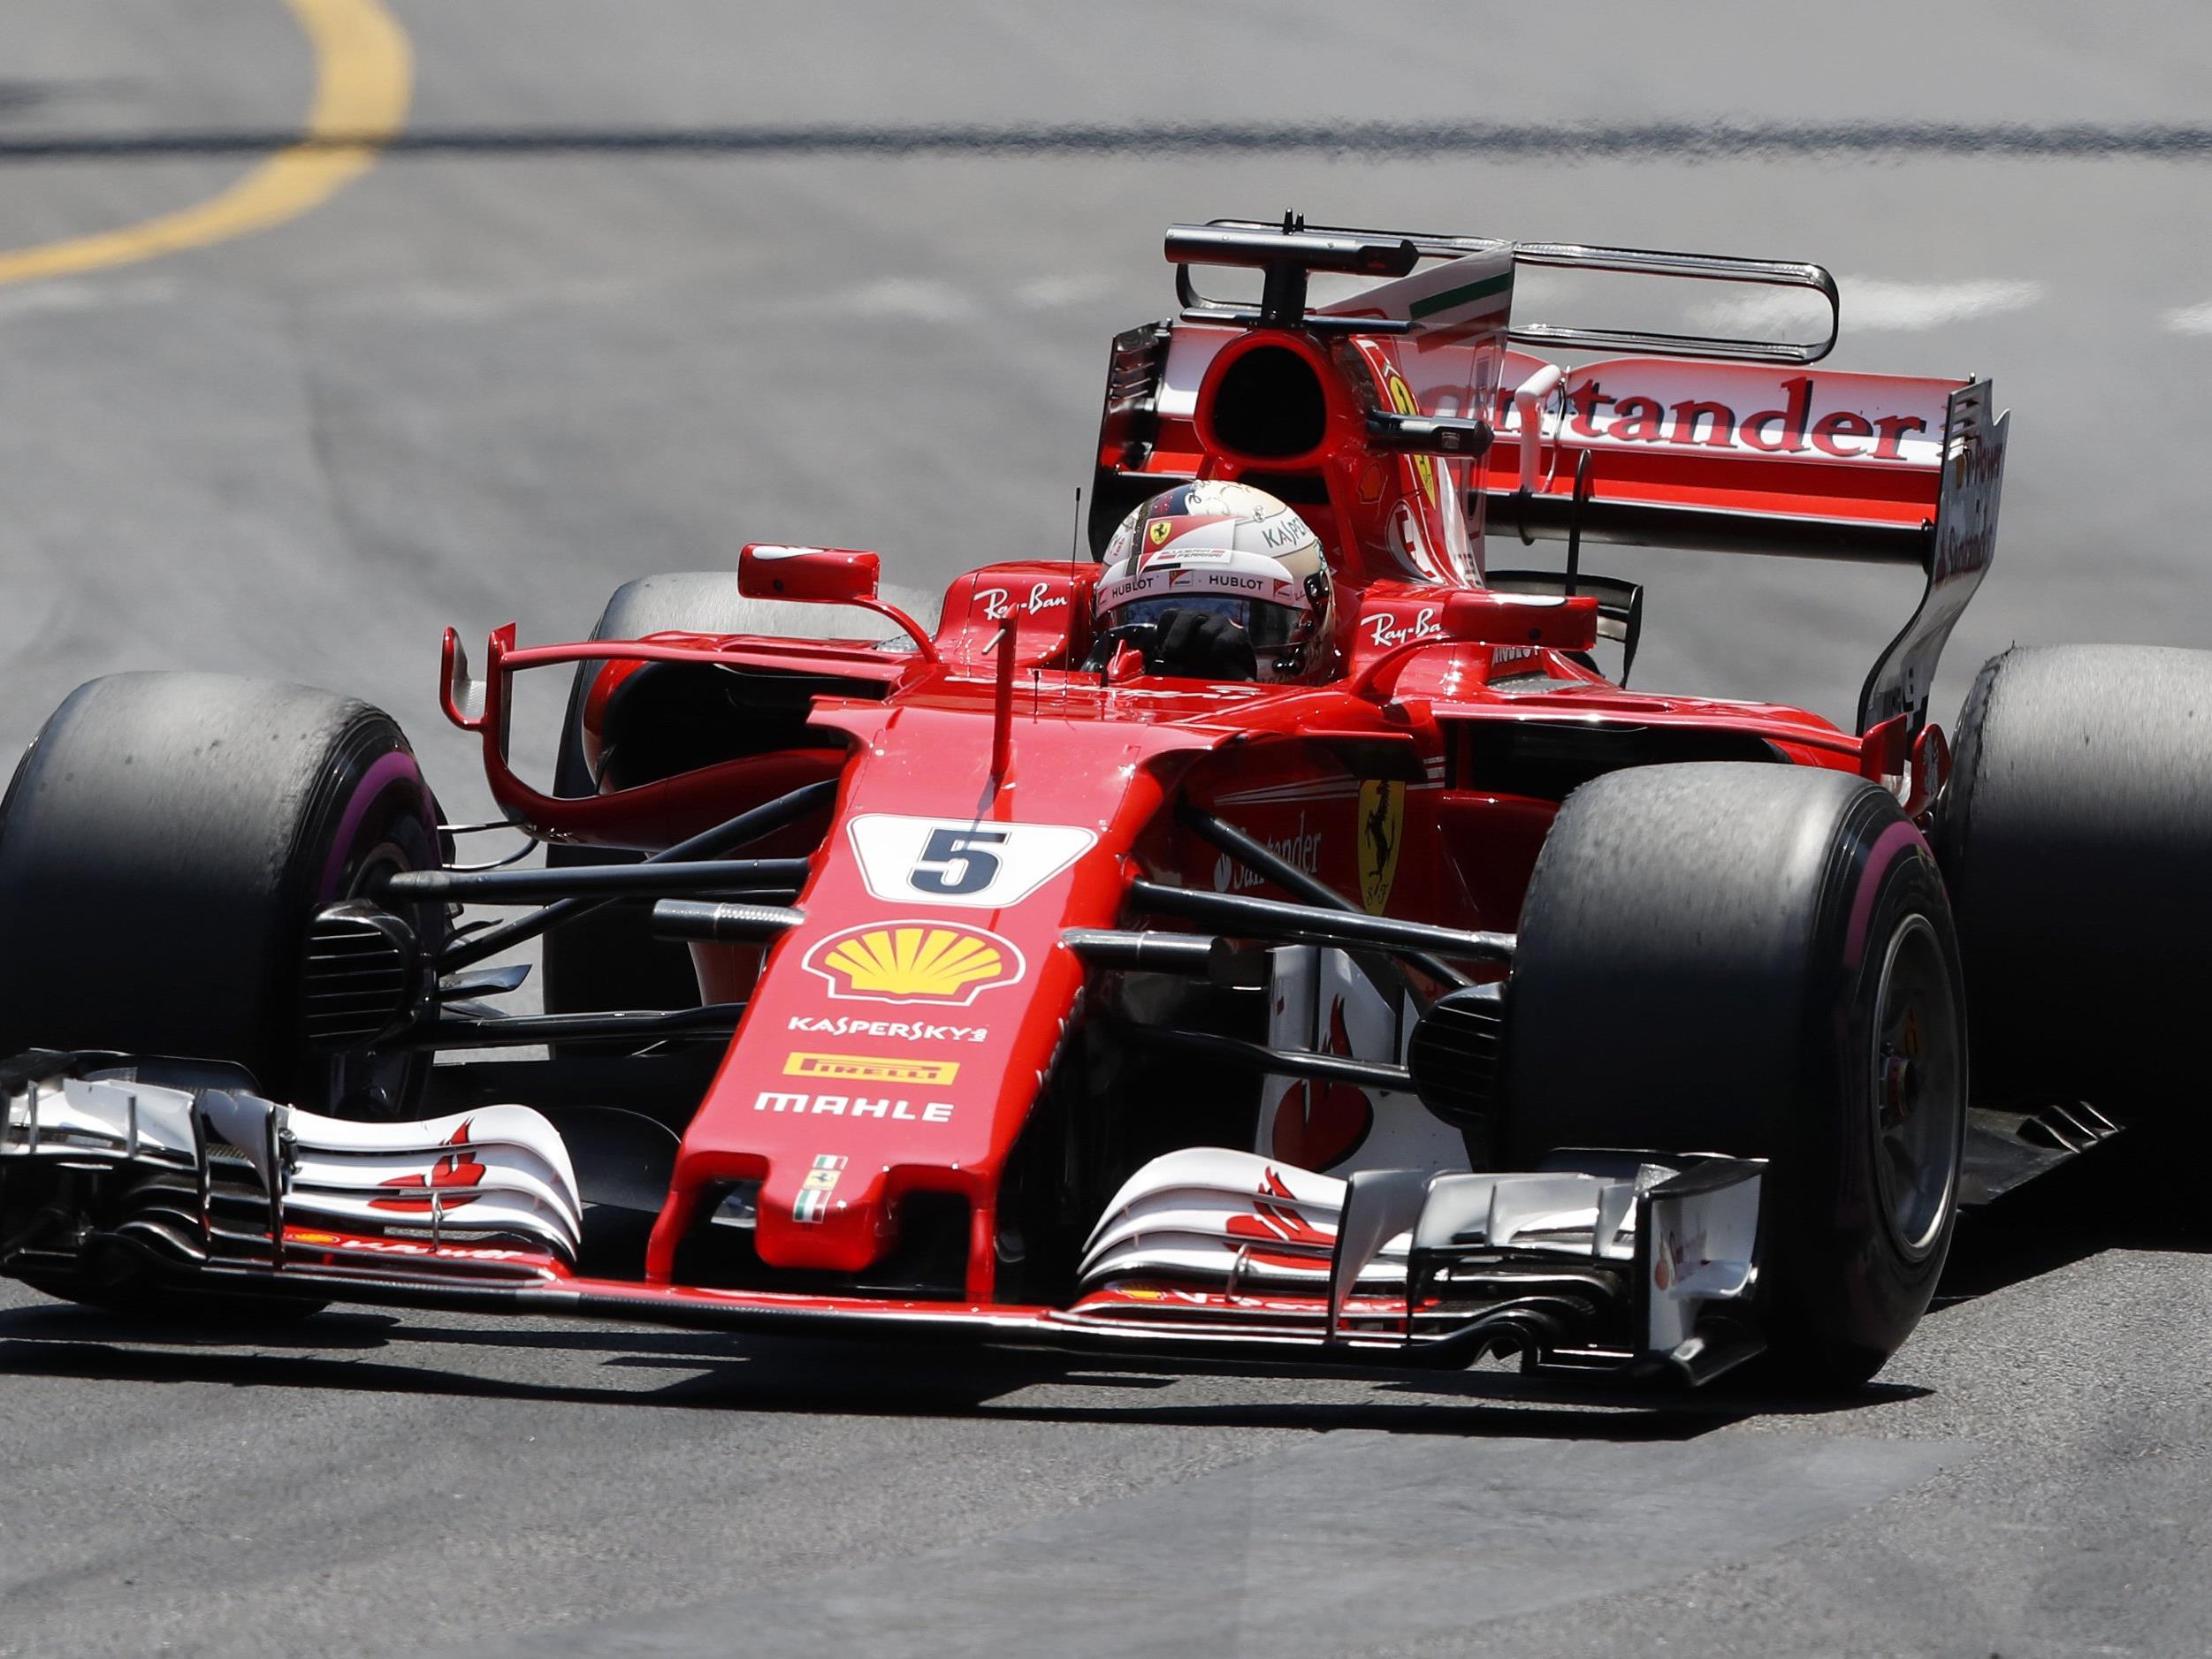 Für Vettel war es der dritte Sieg im Jahr 2017 und der insgesamt 45. Grand-Prix-Erfolg seiner Karriere.